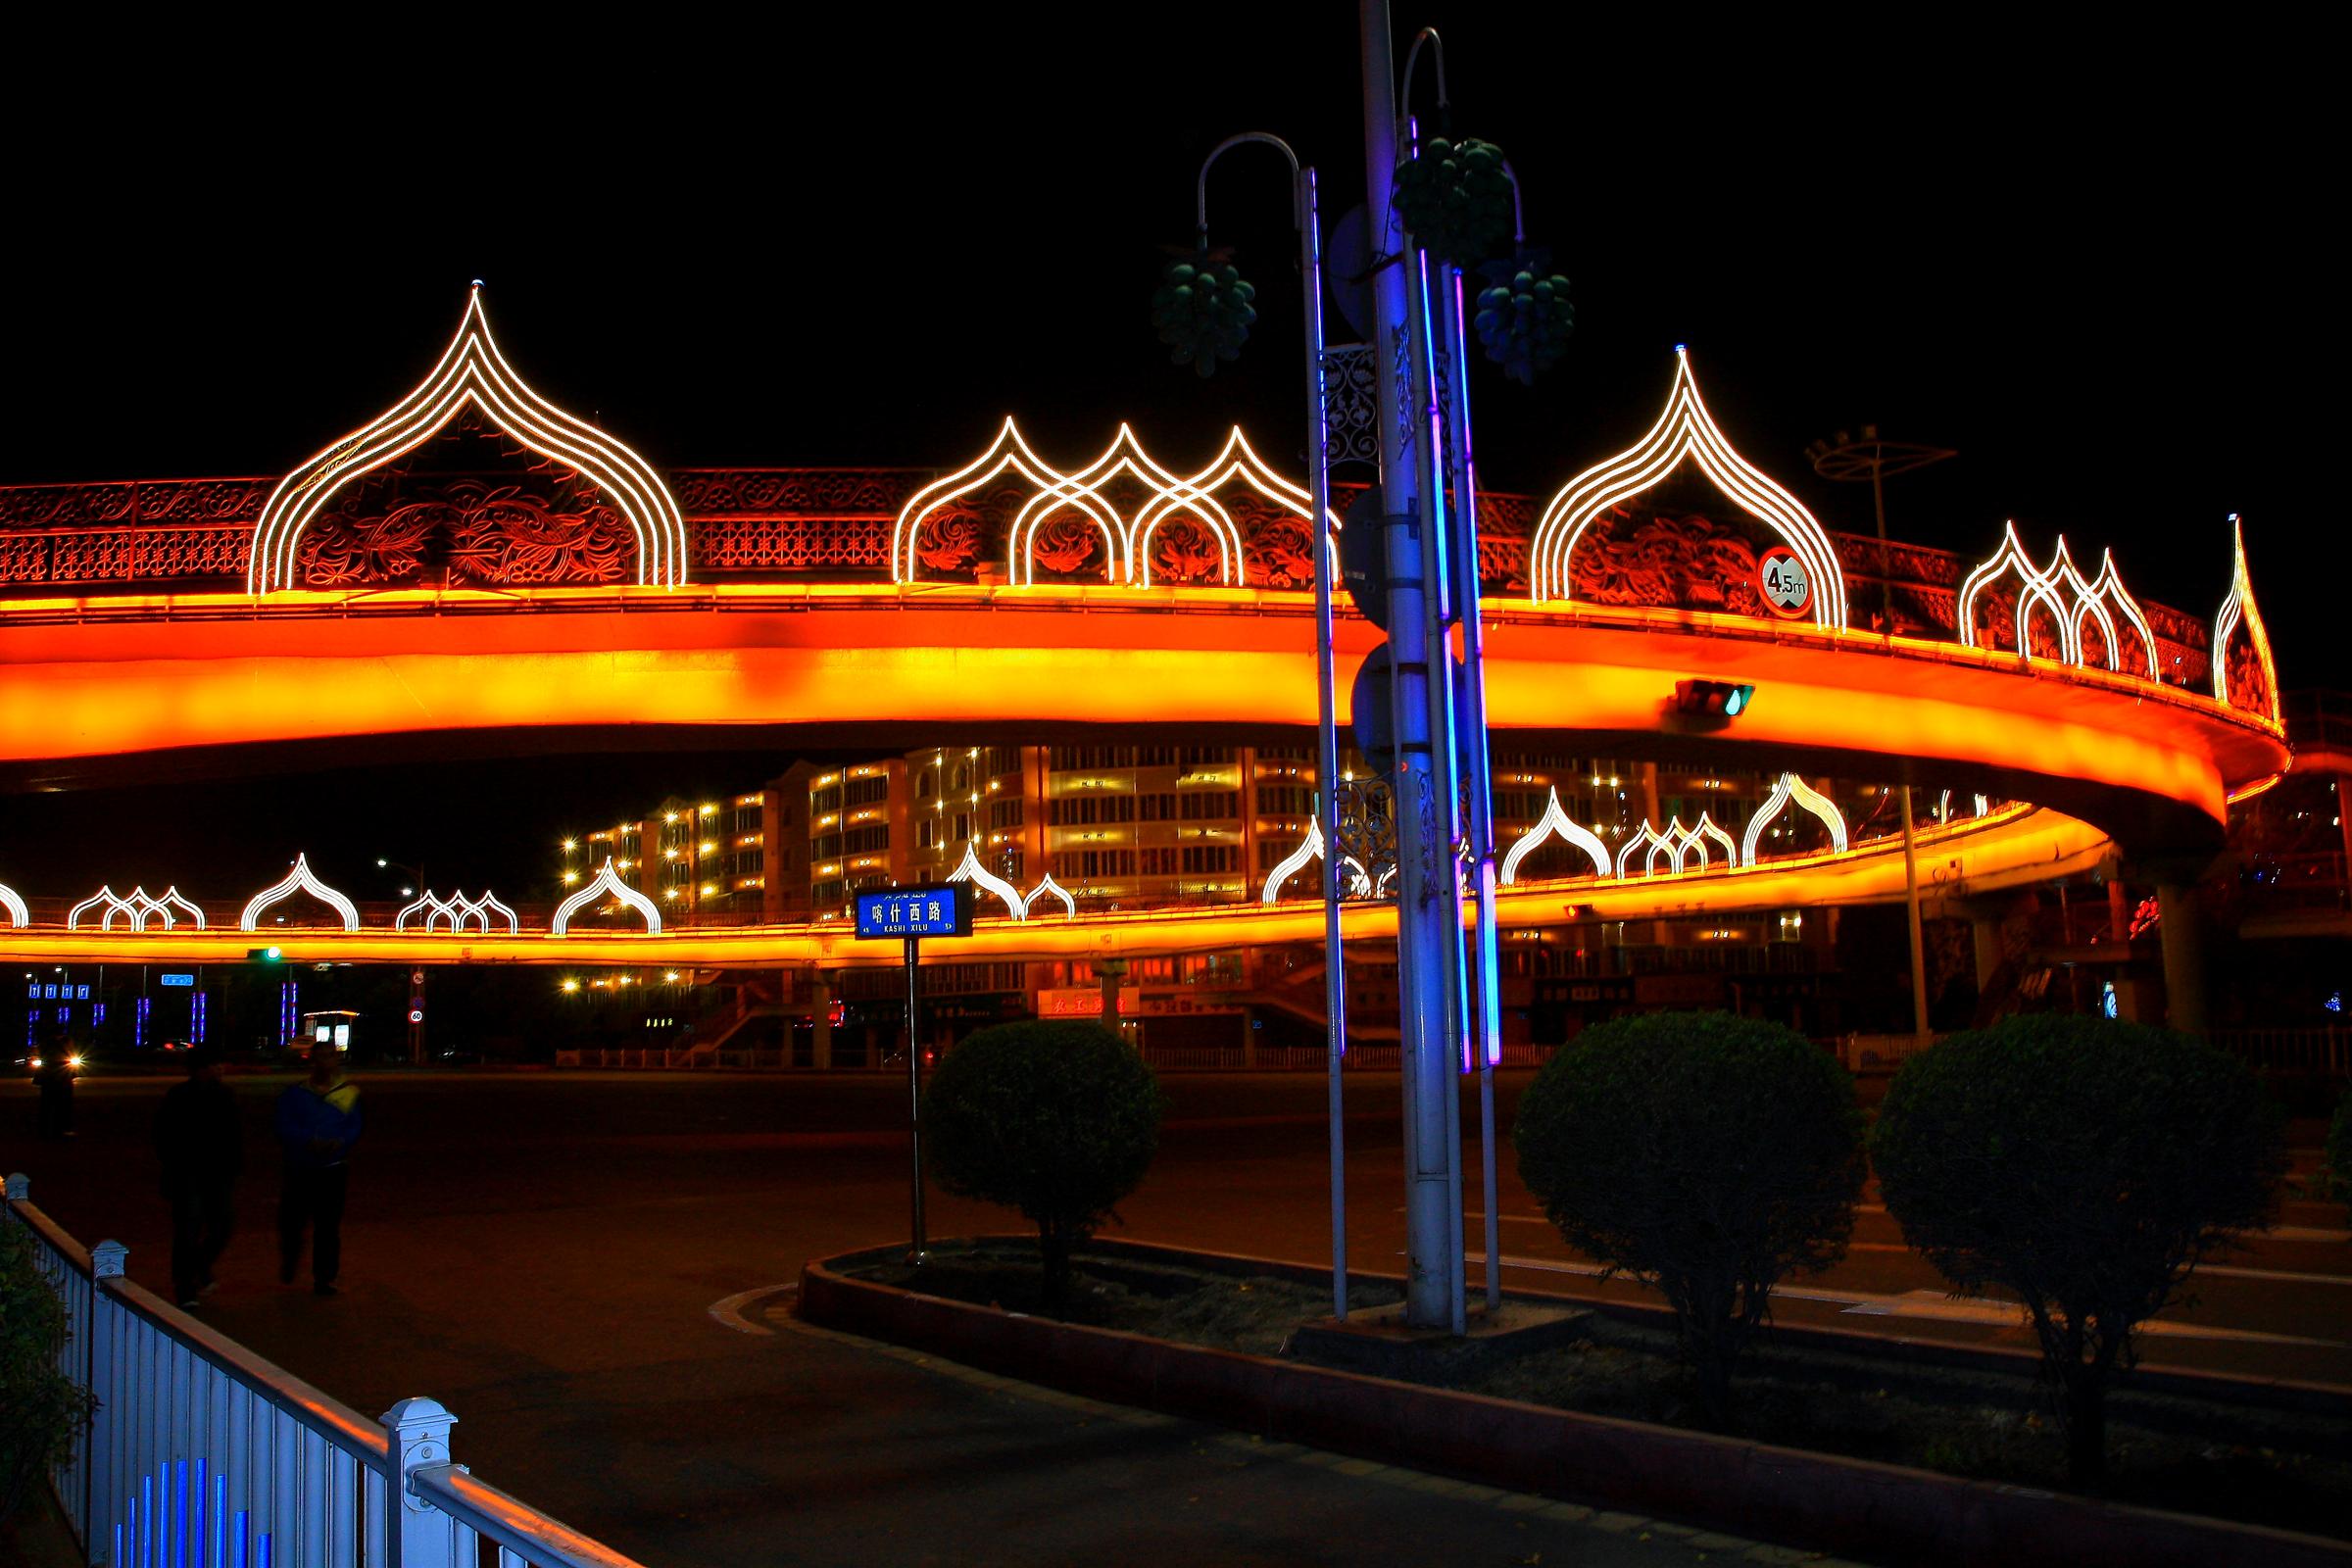 乌鲁木齐站夜景图片